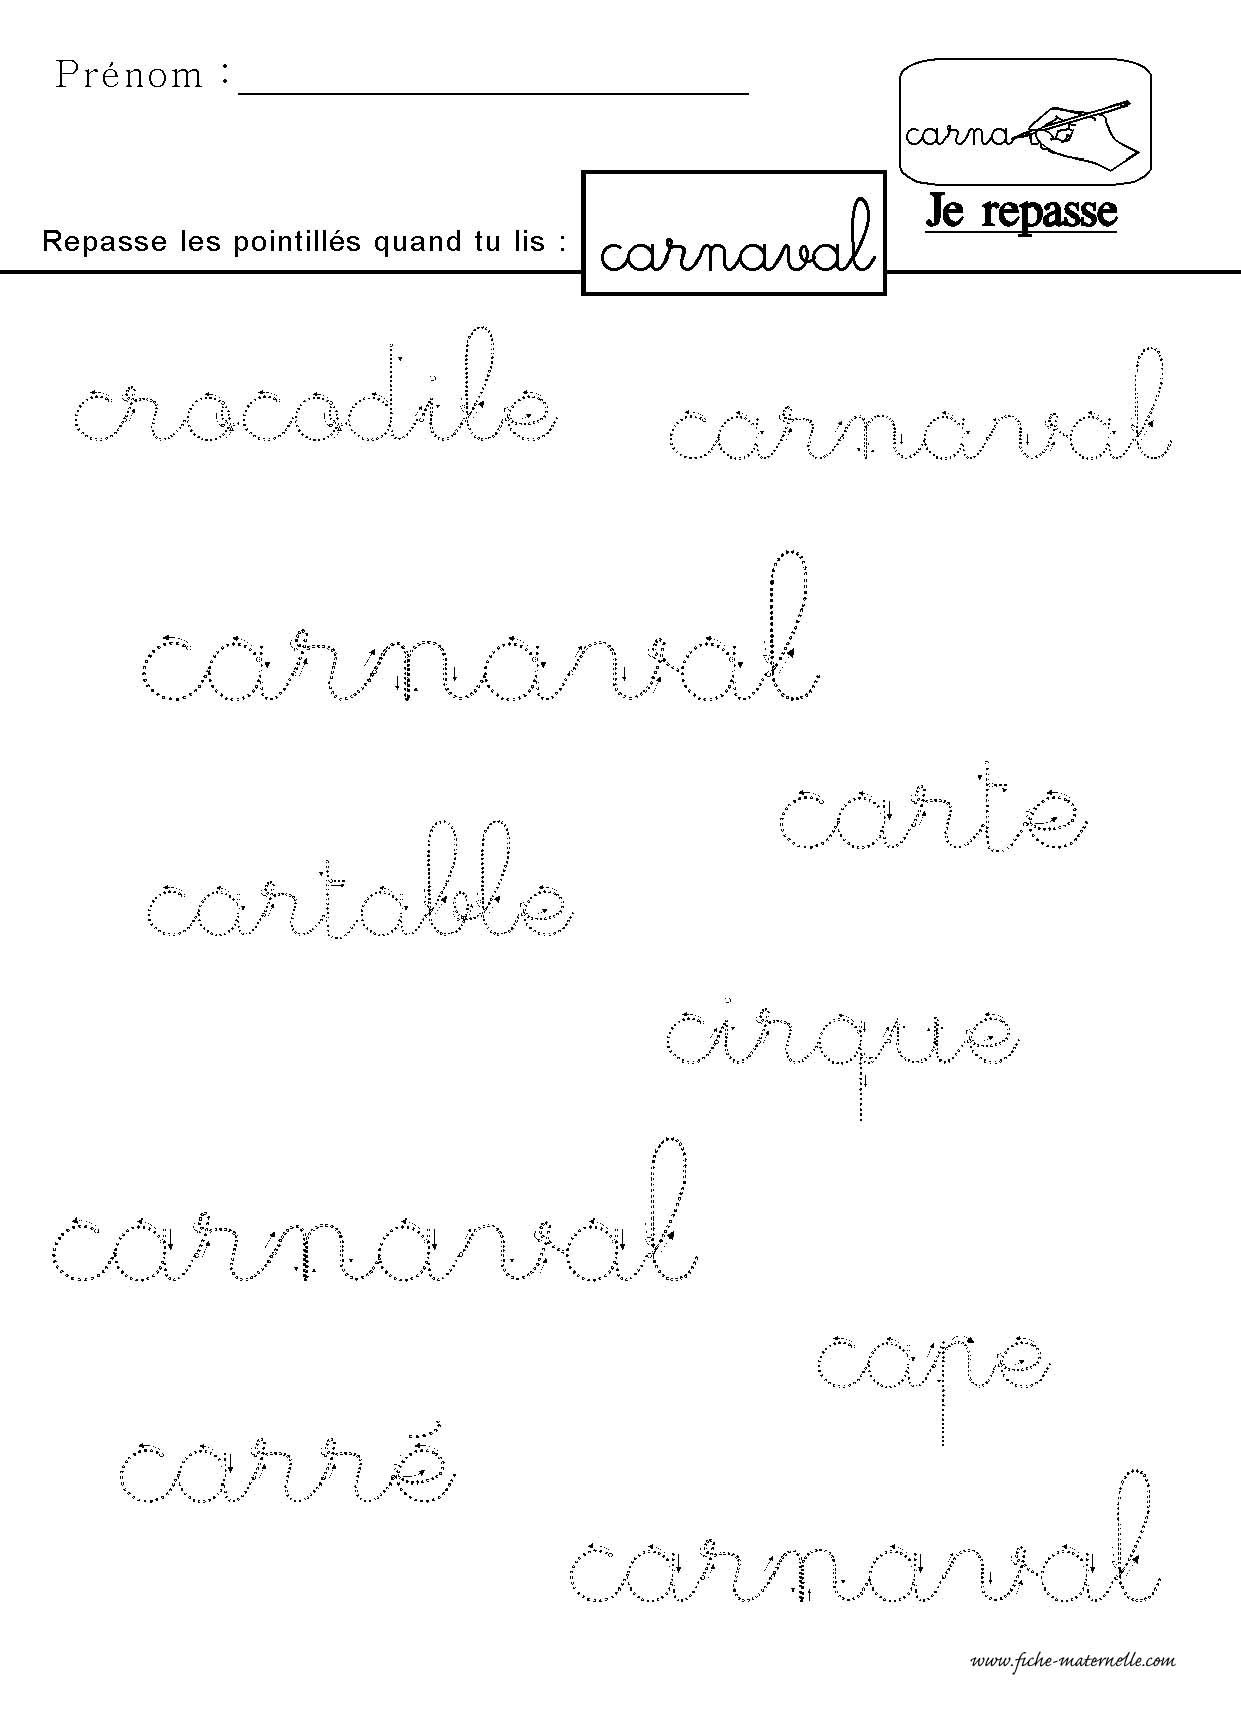 Ecrire le mot "carnaval" en lettres cursives